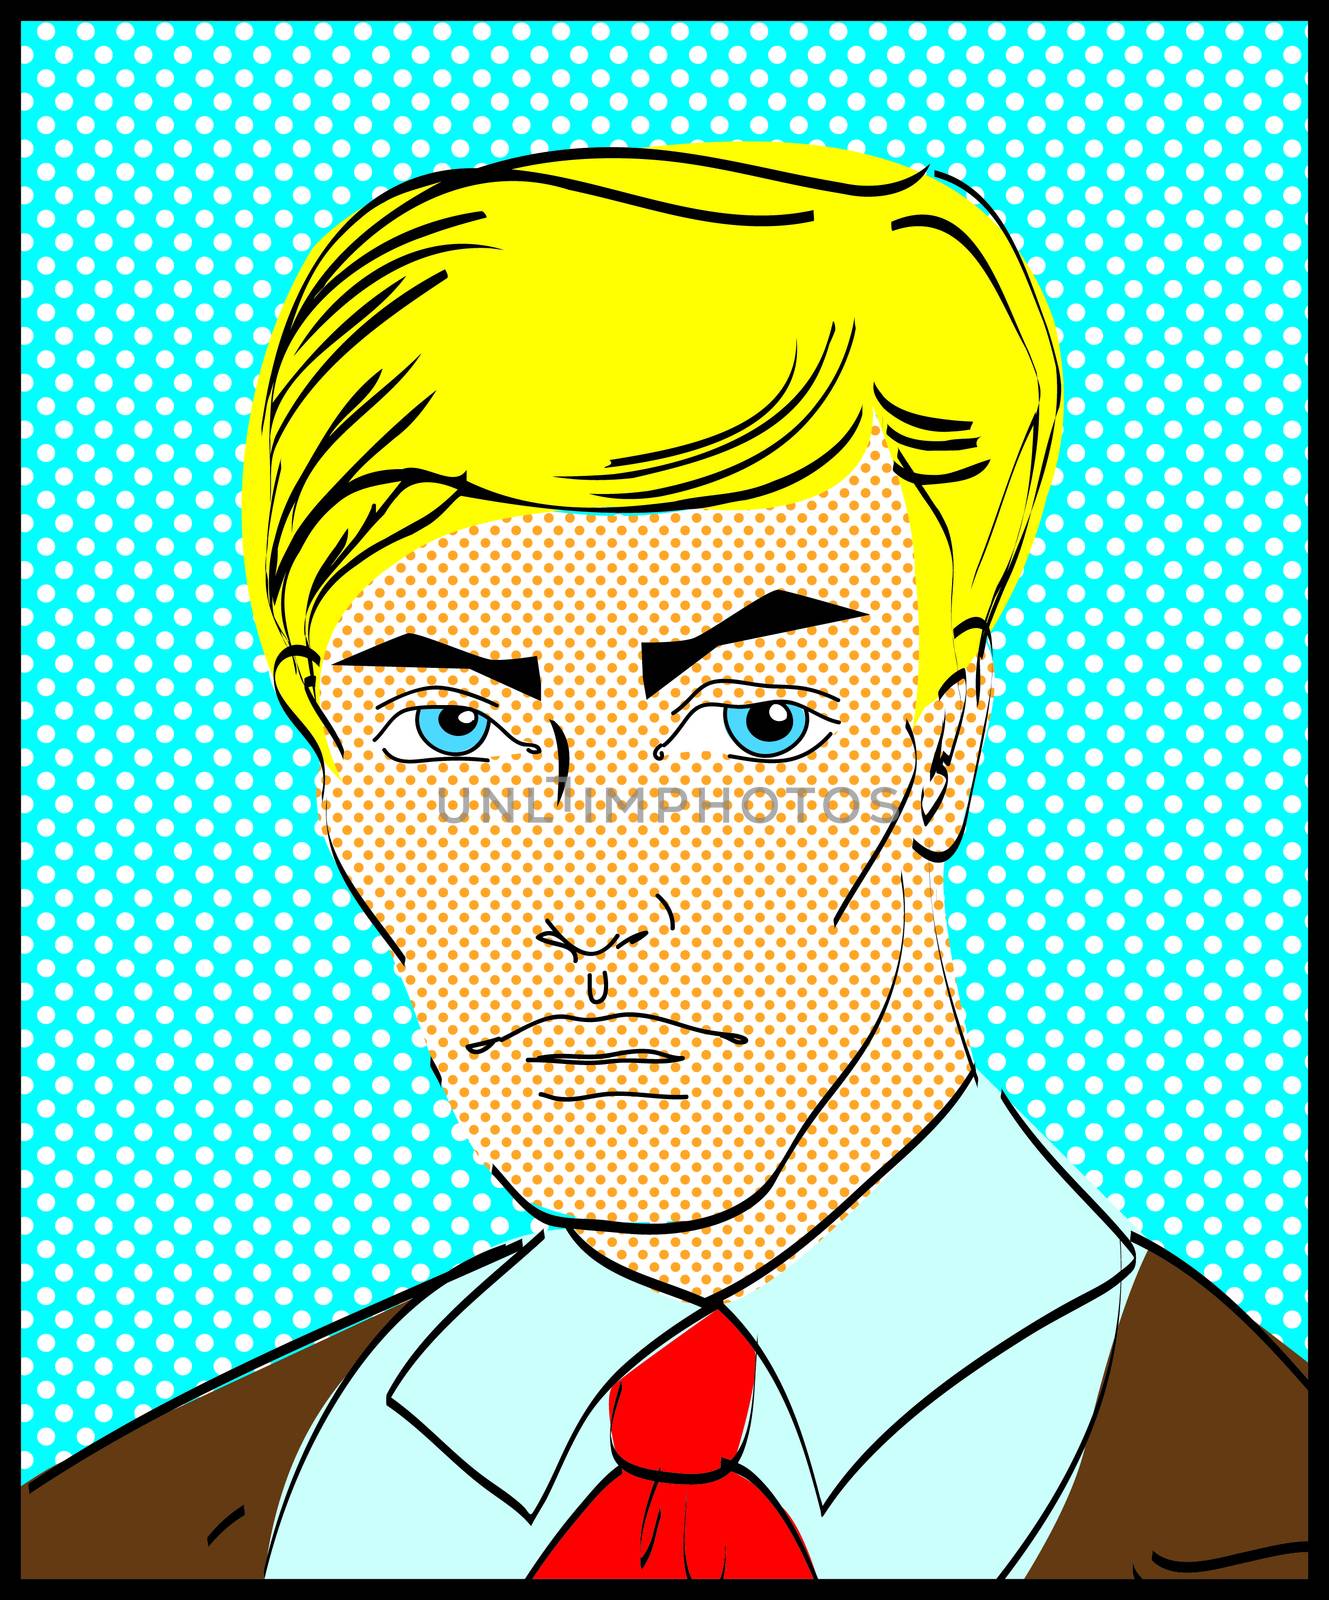 Retro Popart man portrait  by IconsJewelry